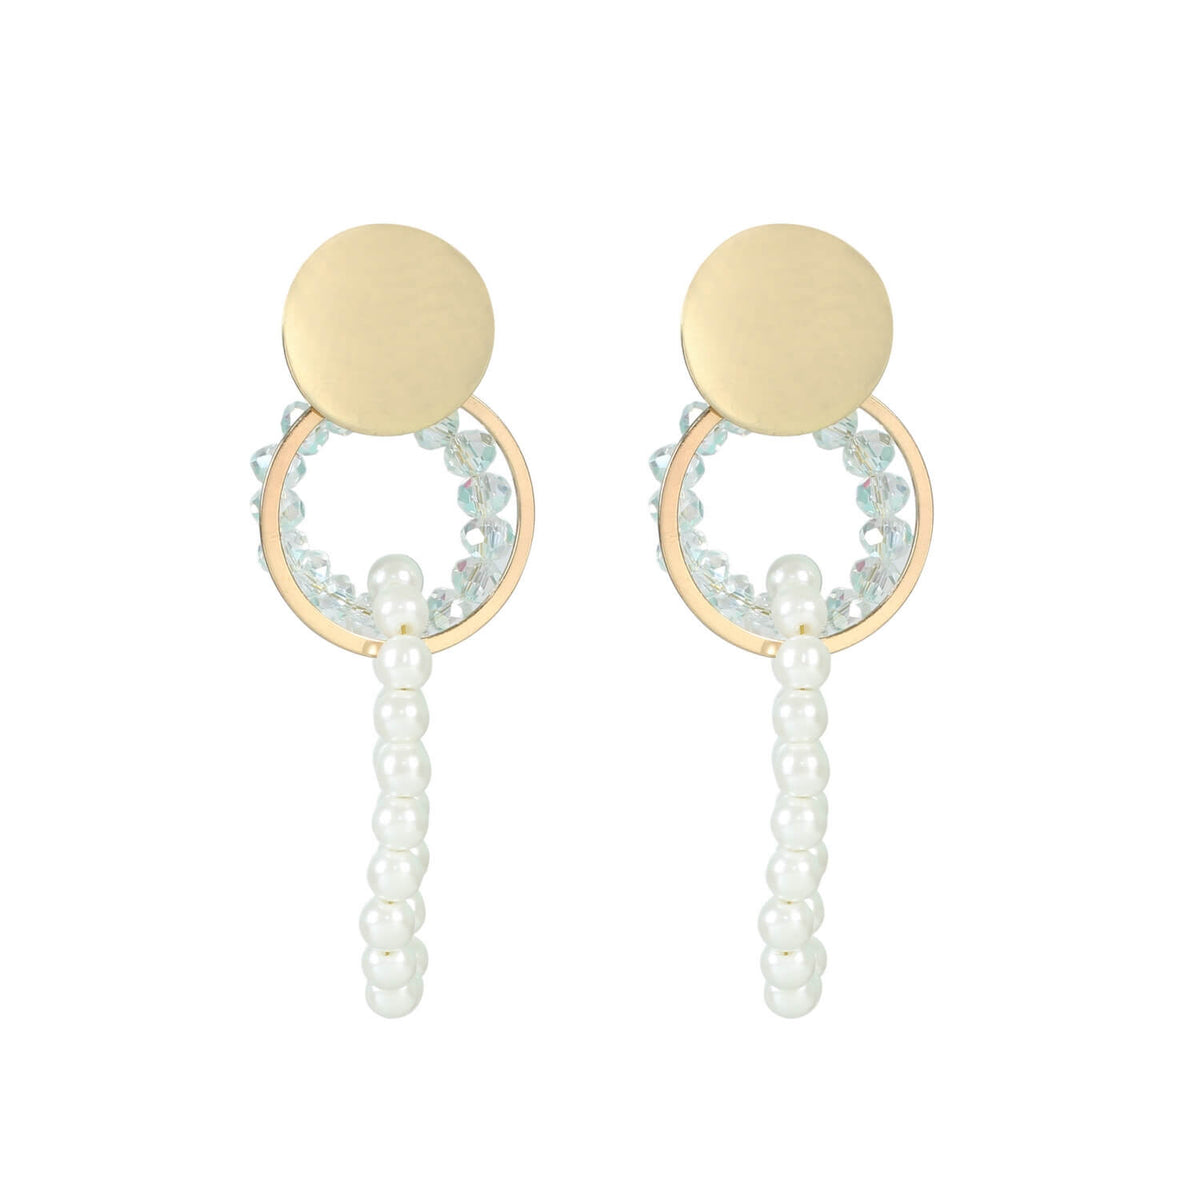 Elegant Pearl Circle Radiance Earrings